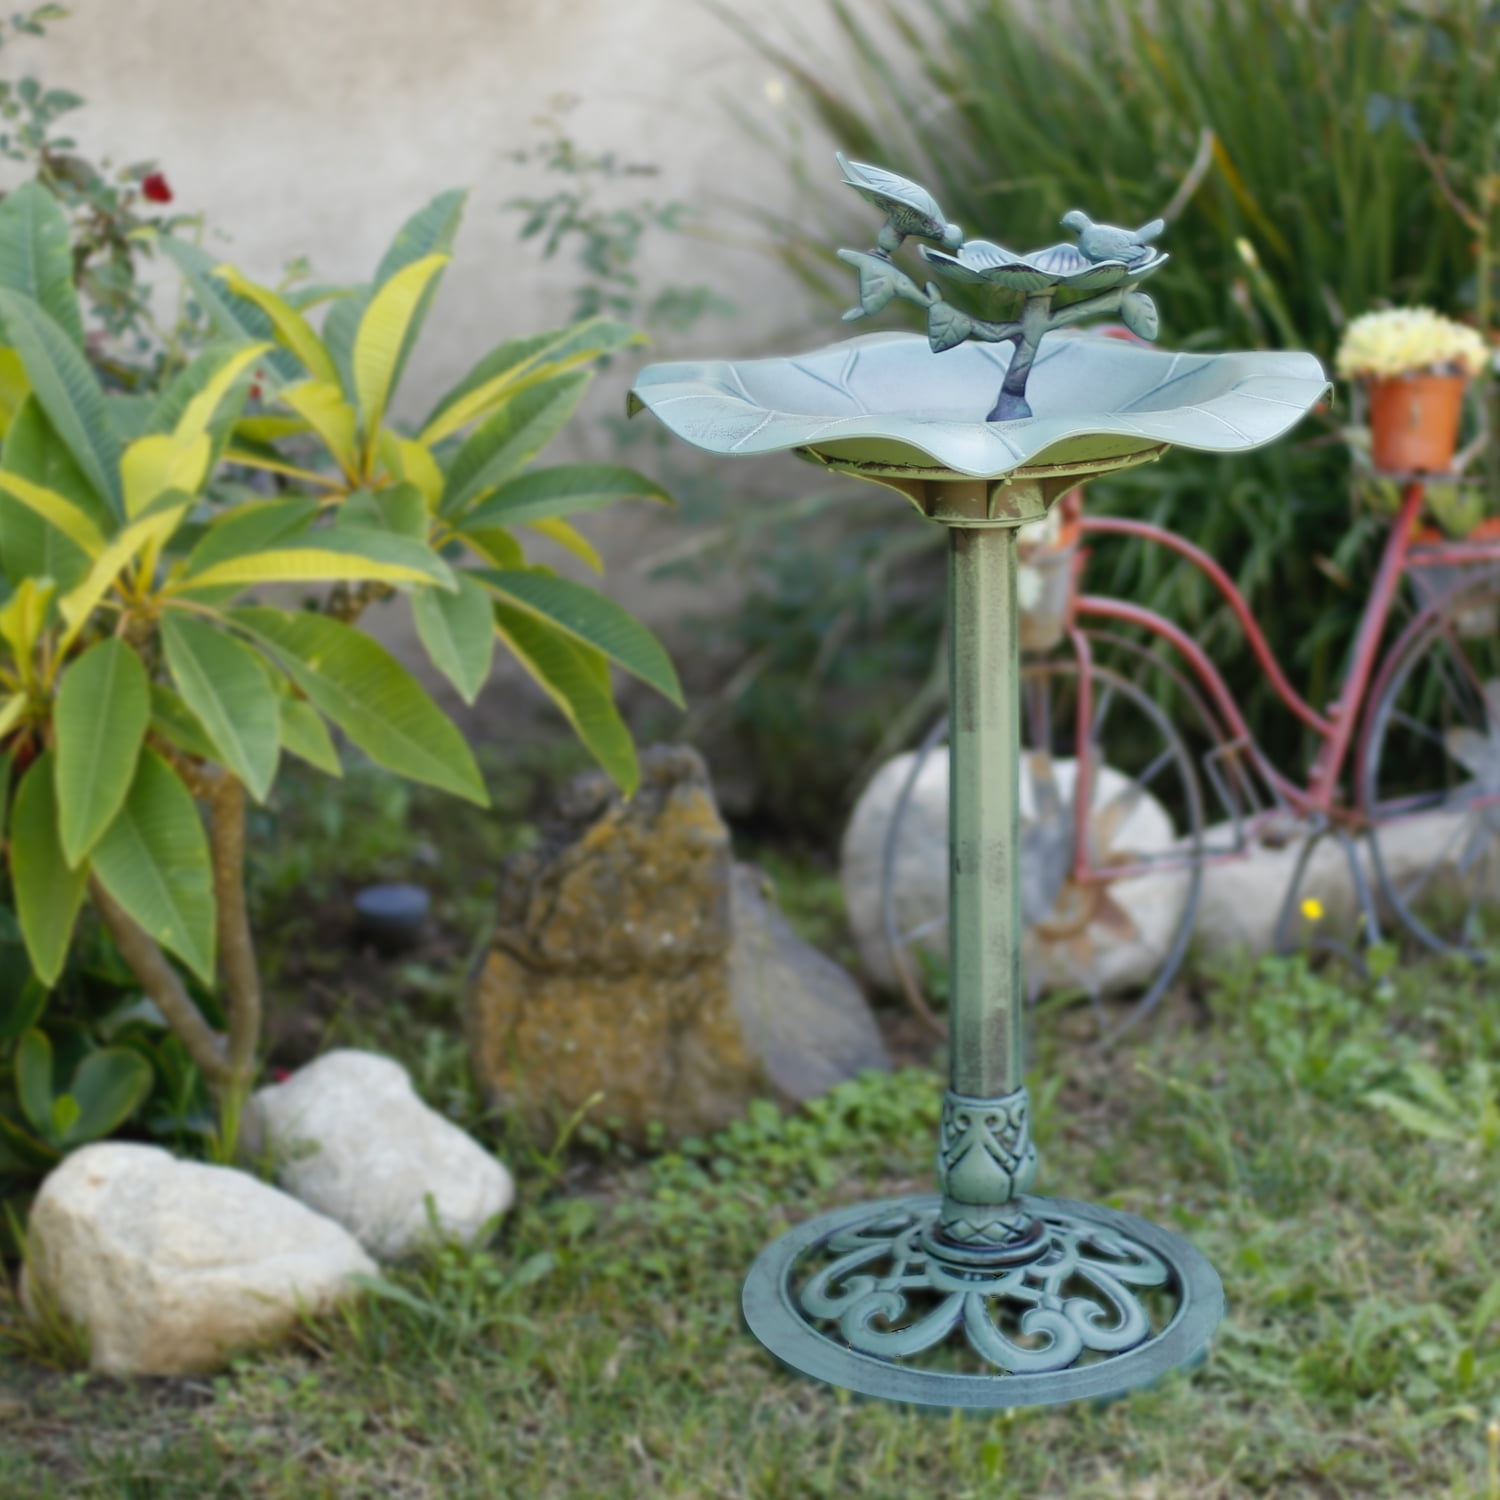 28" Luxury Bird Bath Garden Decorative Assembled  Verdigris Bird Feeder Outdoor 